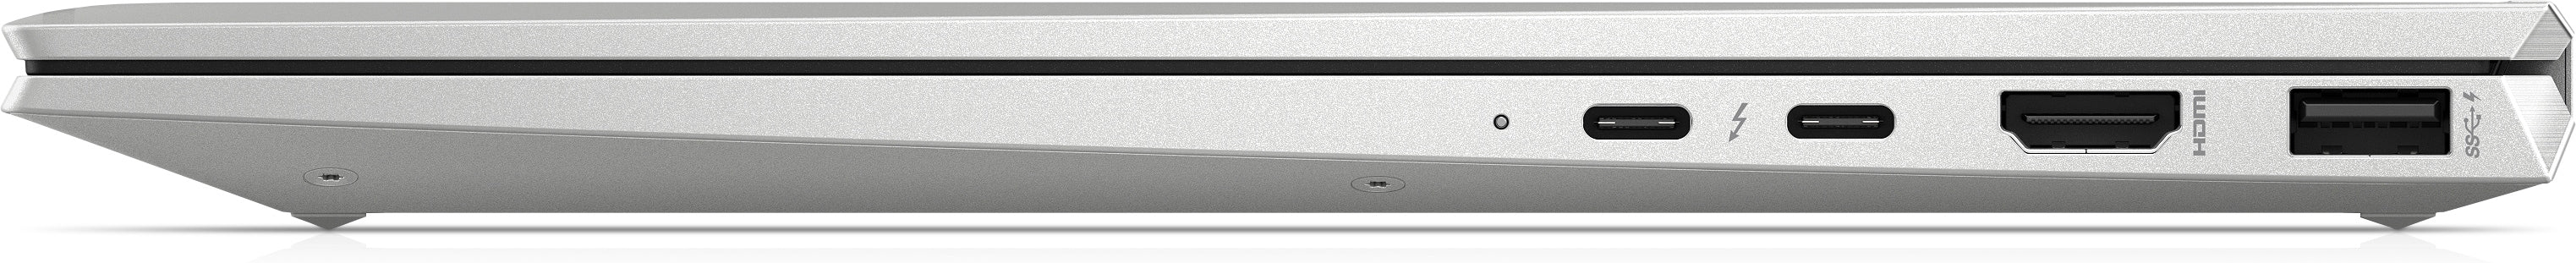 HP EliteBook x360 1040 G8, Intel® Core™ i7, 35.6 cm (14"), 1920 x 1080 pixels, 16 GB, 512 GB, Windows 10 Pro